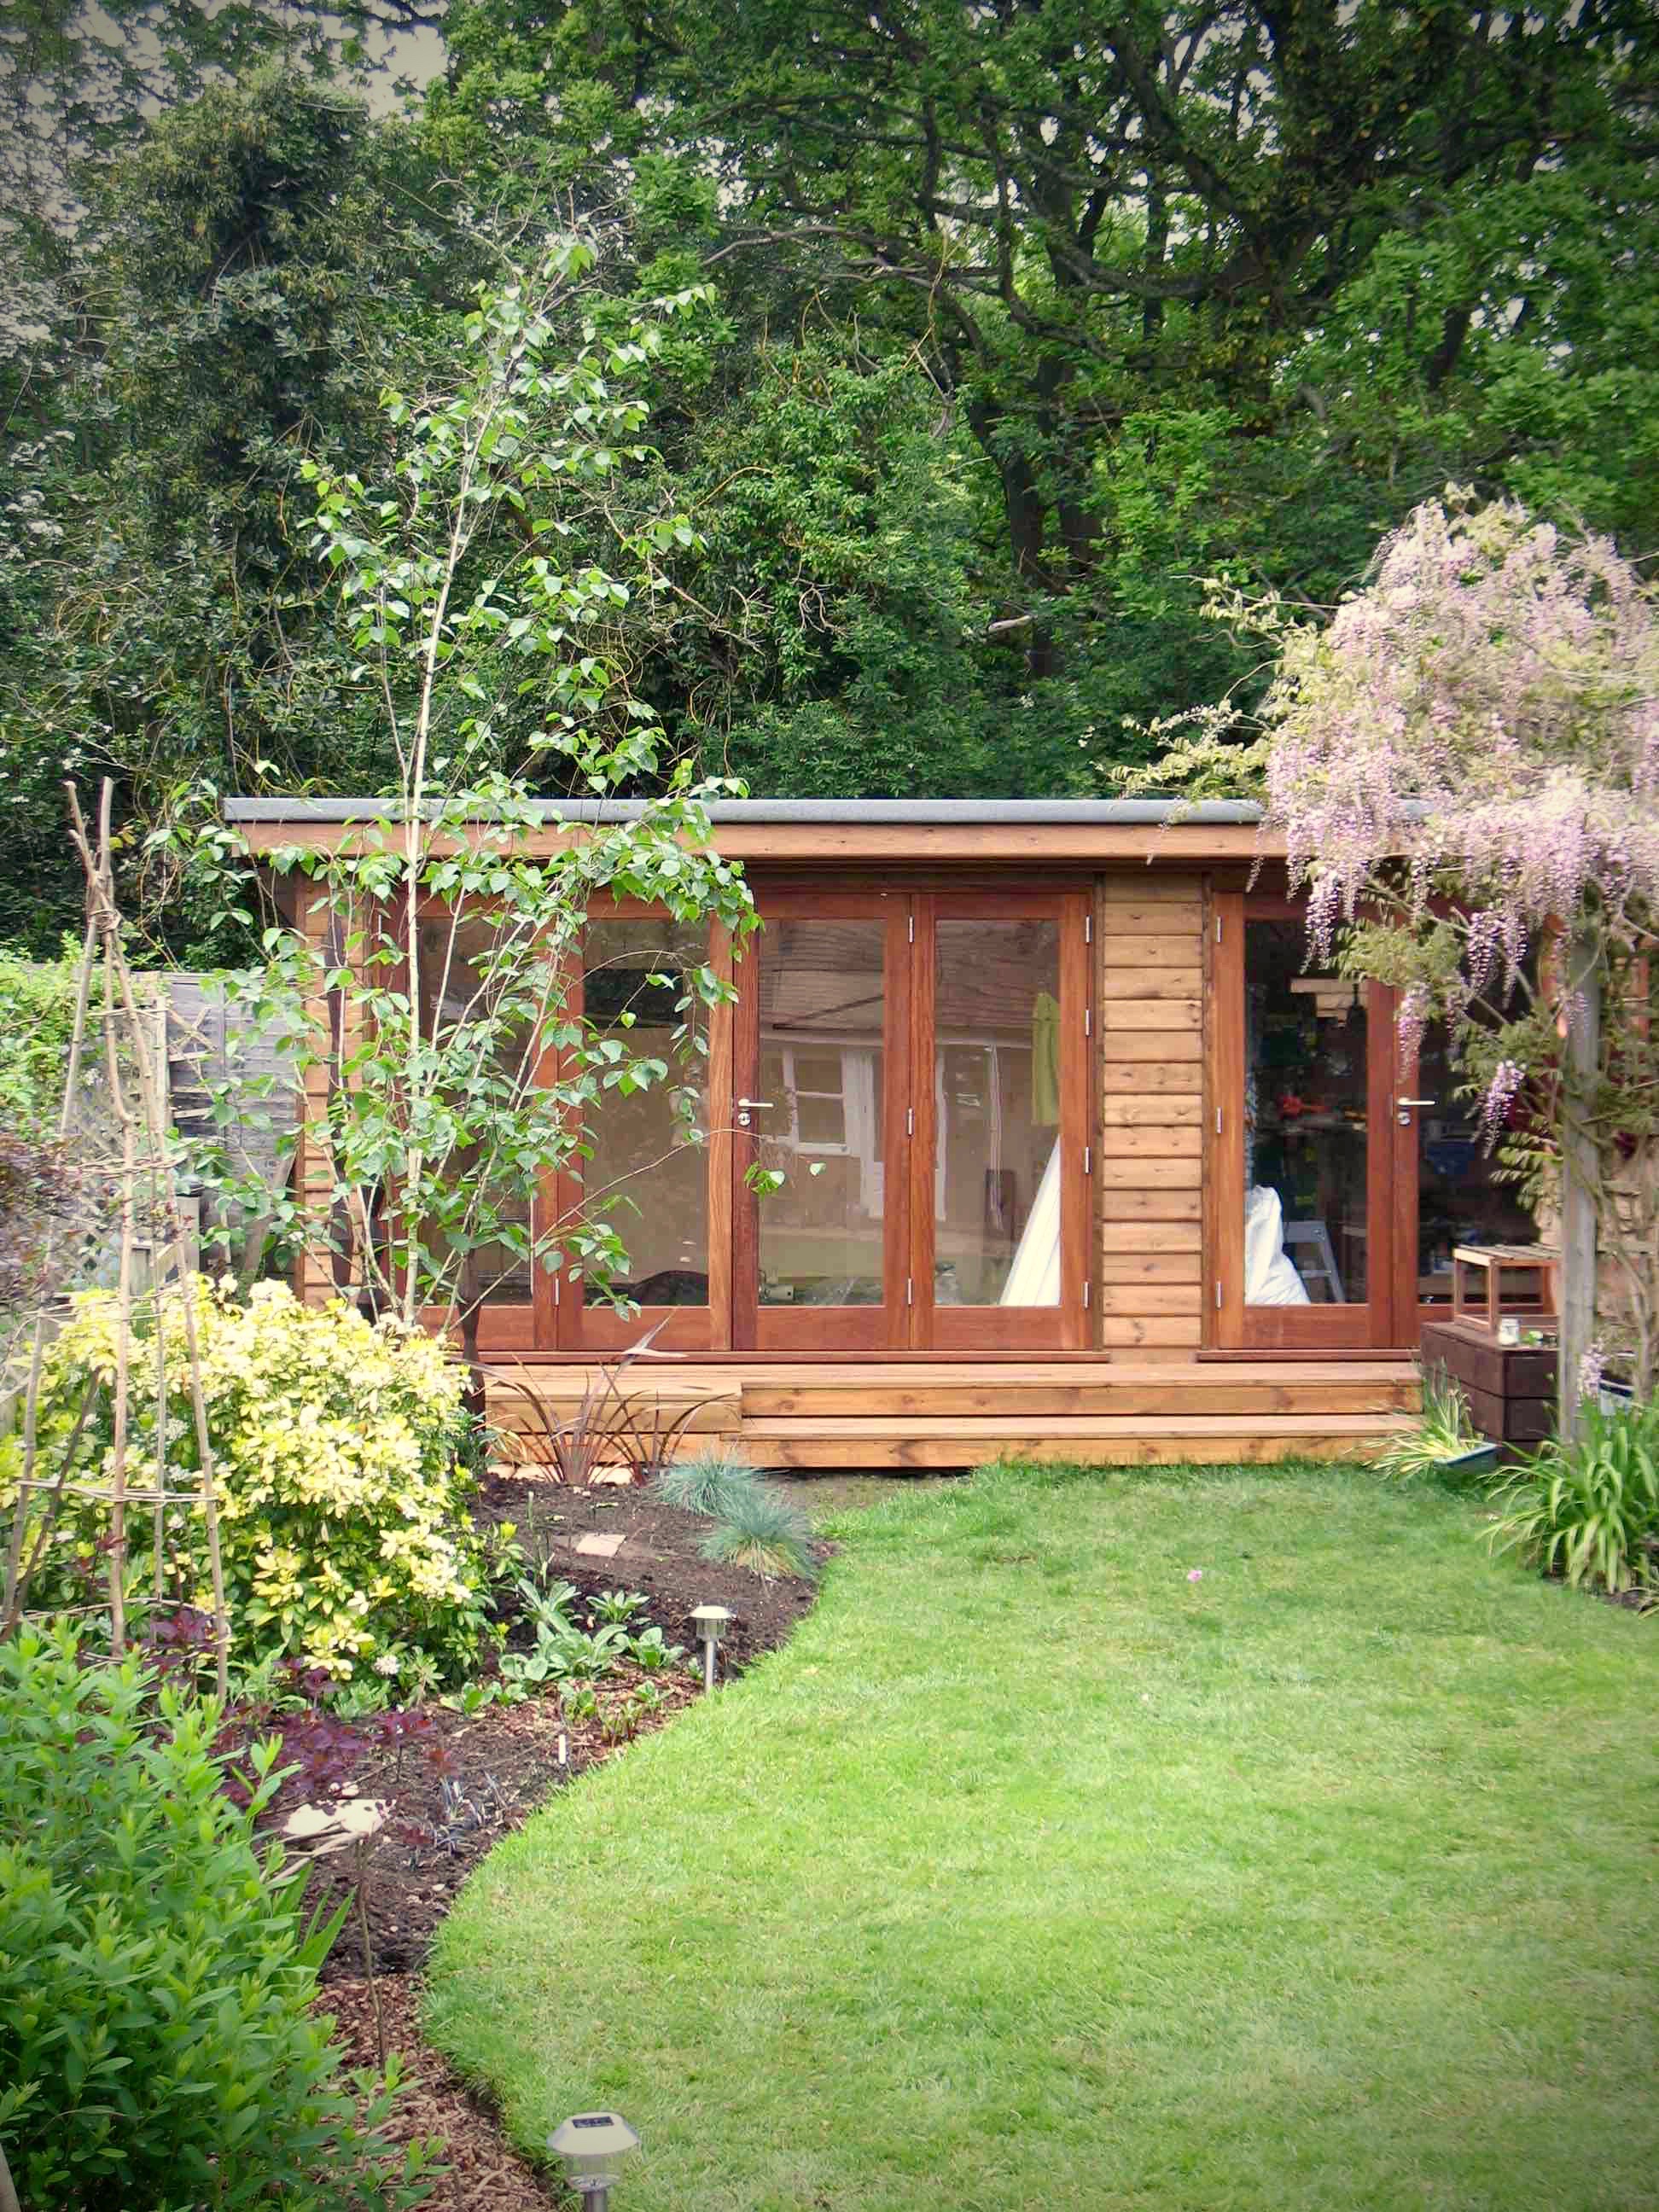 Liss garden studio